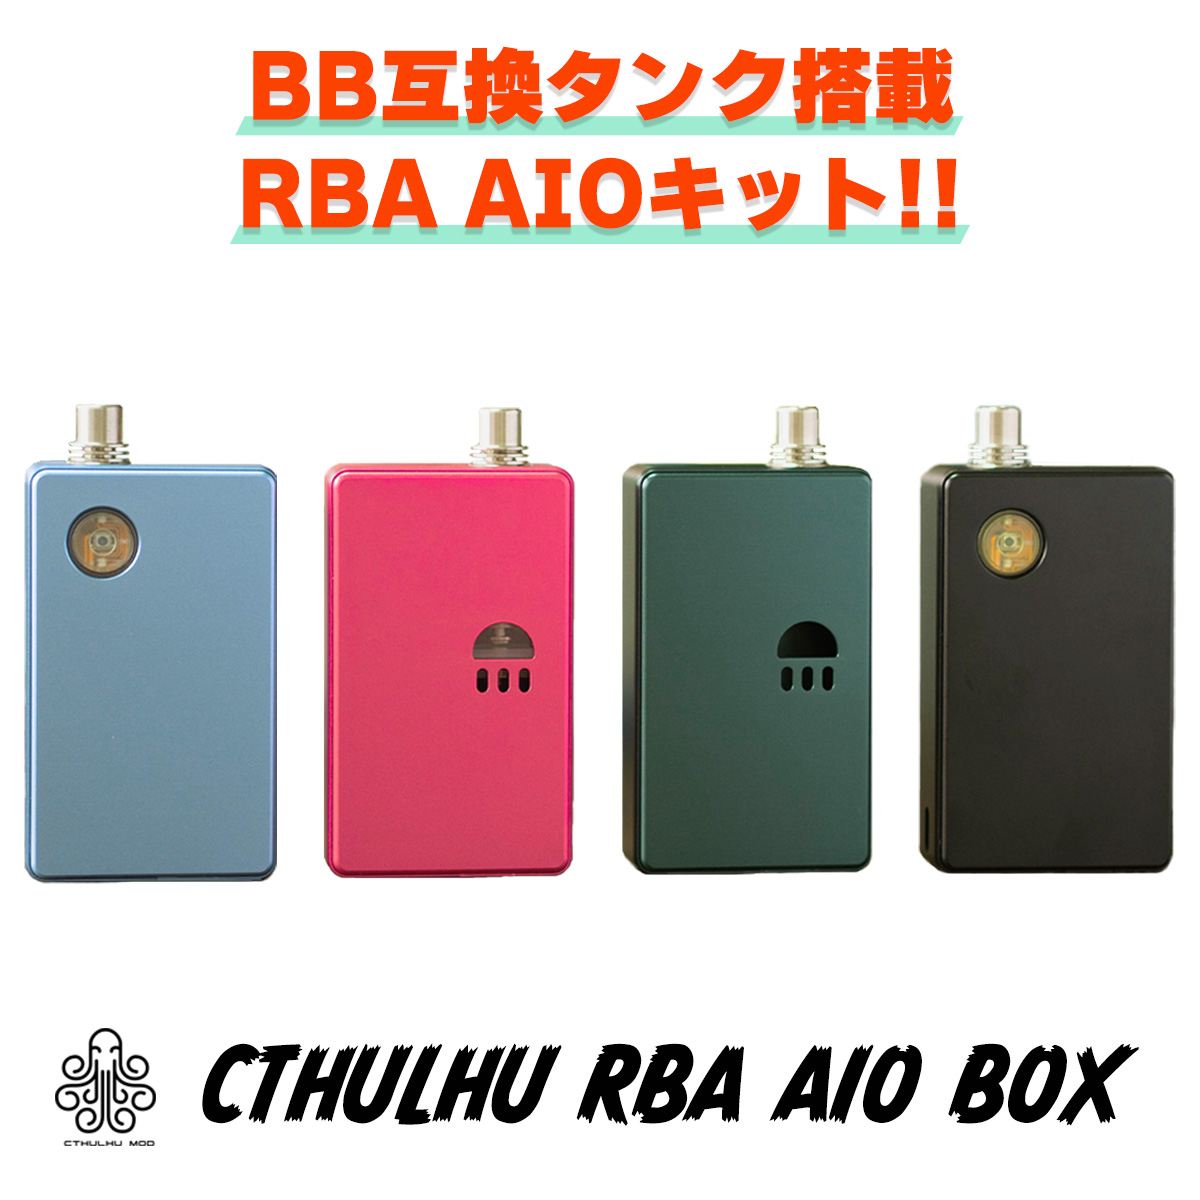 BOROタンク互換のAIO KIT Cthulhu RBA AIO BOX クトゥルフAIO 【BB互換】Cthulhu RBA AIO BOX クトゥルフ RBA BOX 電子タバコ vape RBA RTA ビルド AIO クトゥルフ ビレットボックス billetbox BOROタンク 互換 Cthulhu RBA AIO BOX